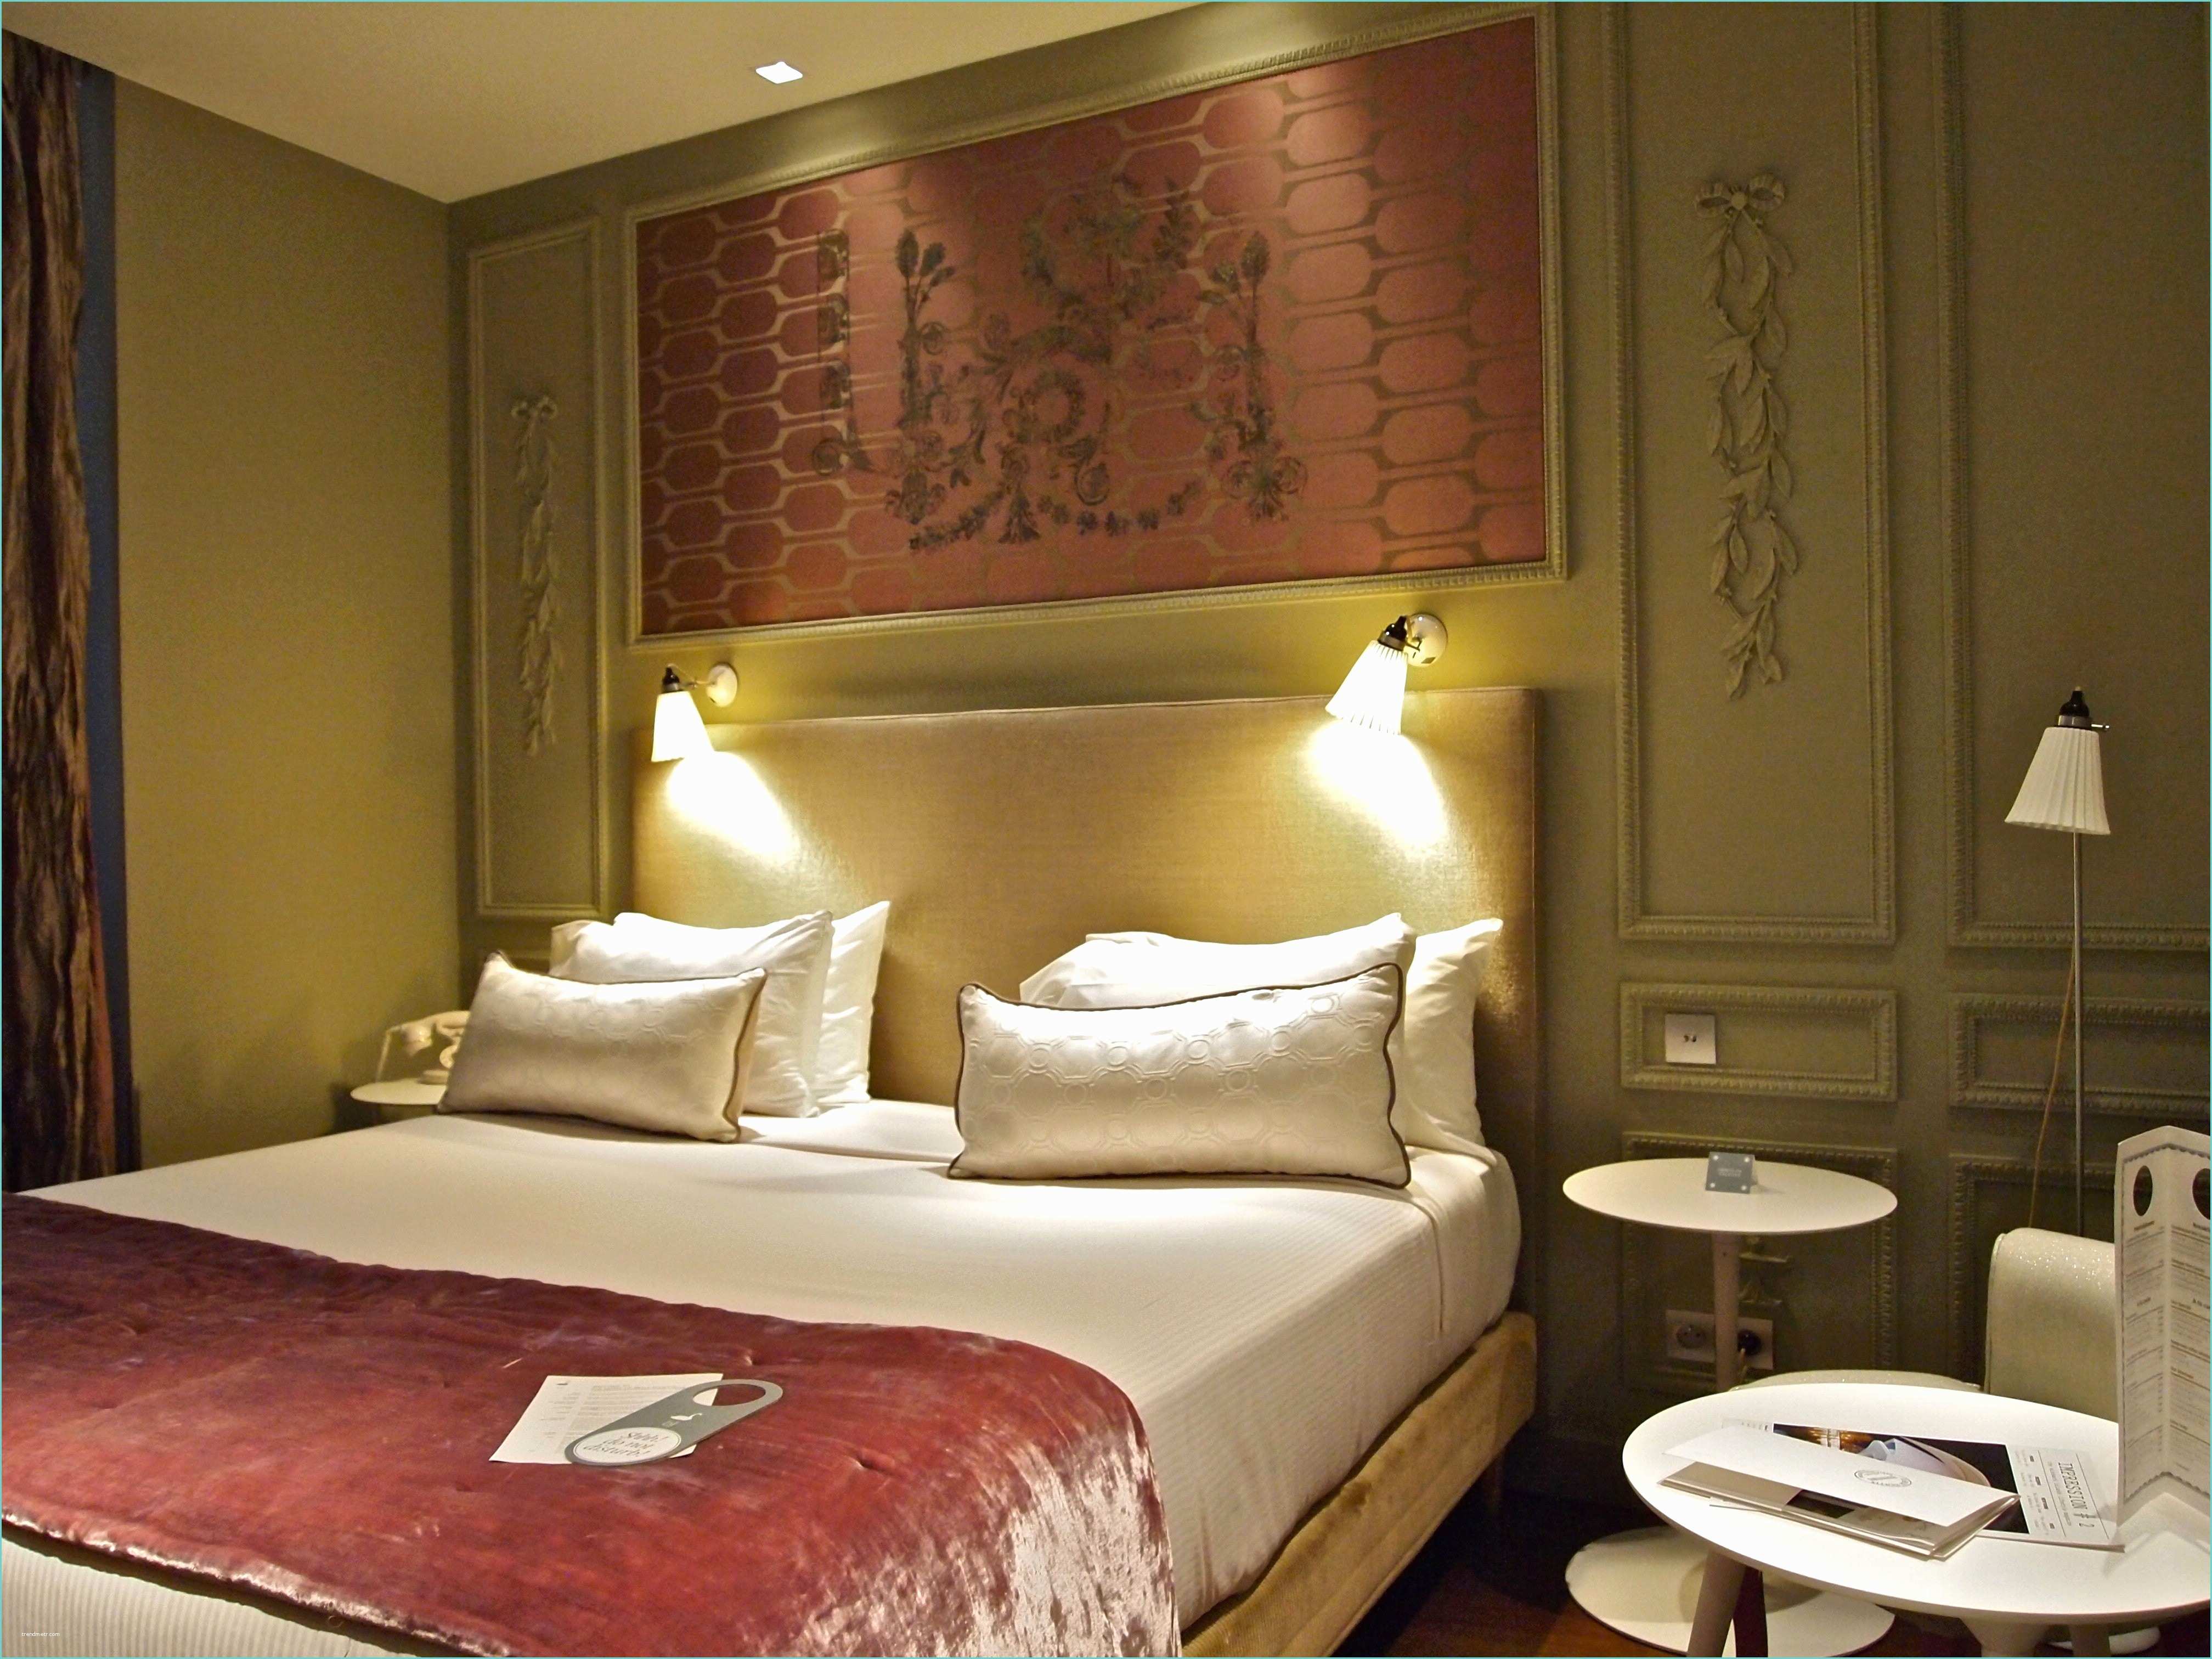 Hotel Romantique Paris Pas Cher Avec Jacuzzi Hotel Avec Jacuzzi Dans La Chambre Pas Cher Good Hotel